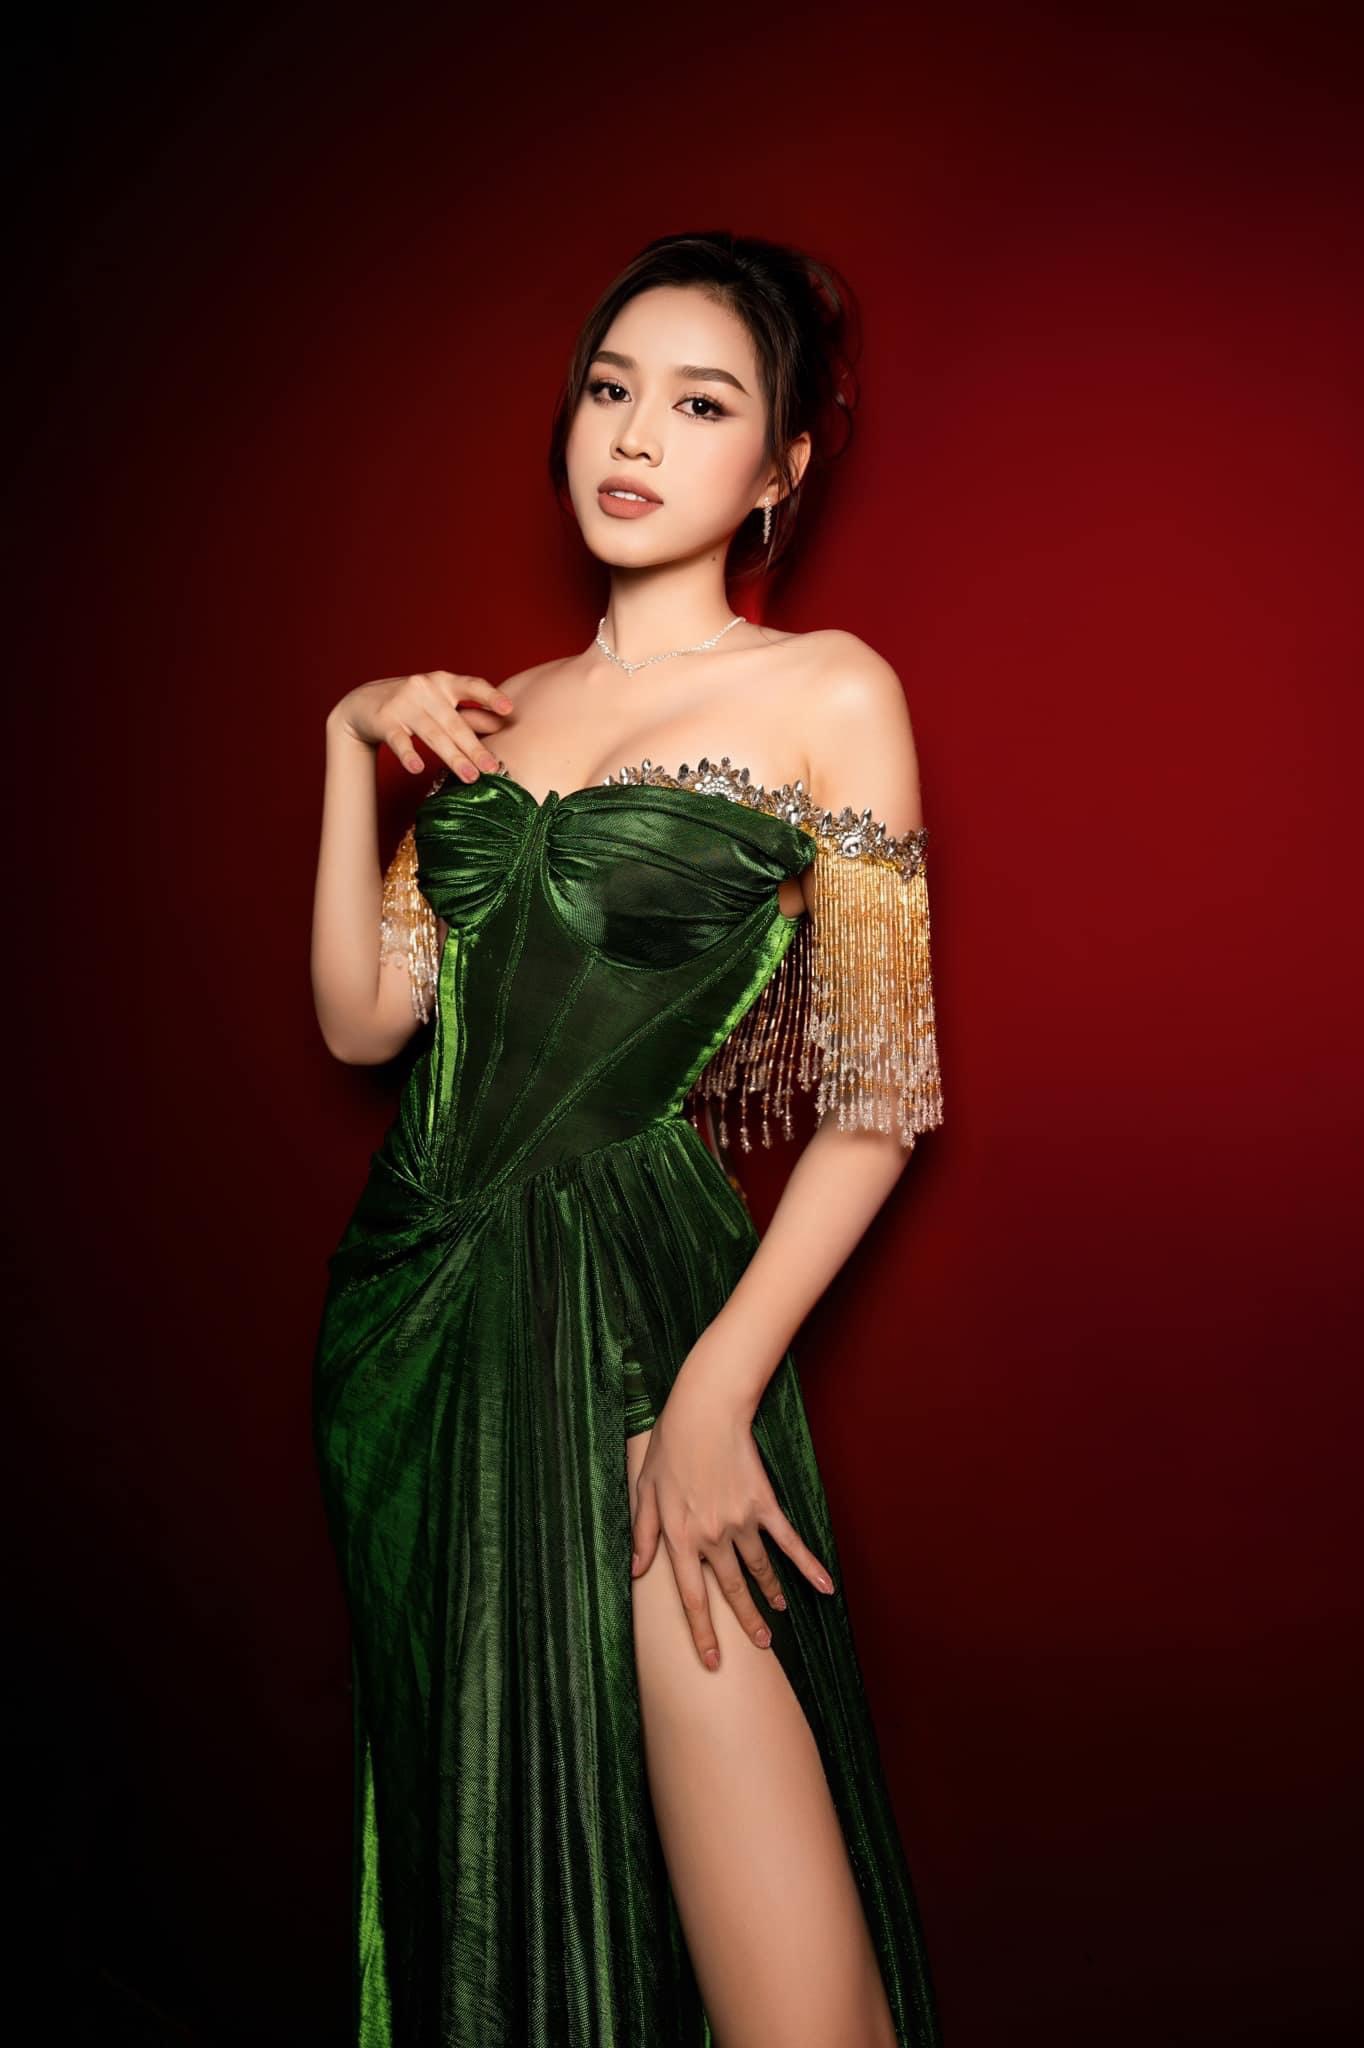 Fanpage cuộc thi Hoa hậu Việt Nam bất ngờ đổi tên, sau 35 năm tổ chức liệu có nguy cơ tạm dừng? - ảnh 4